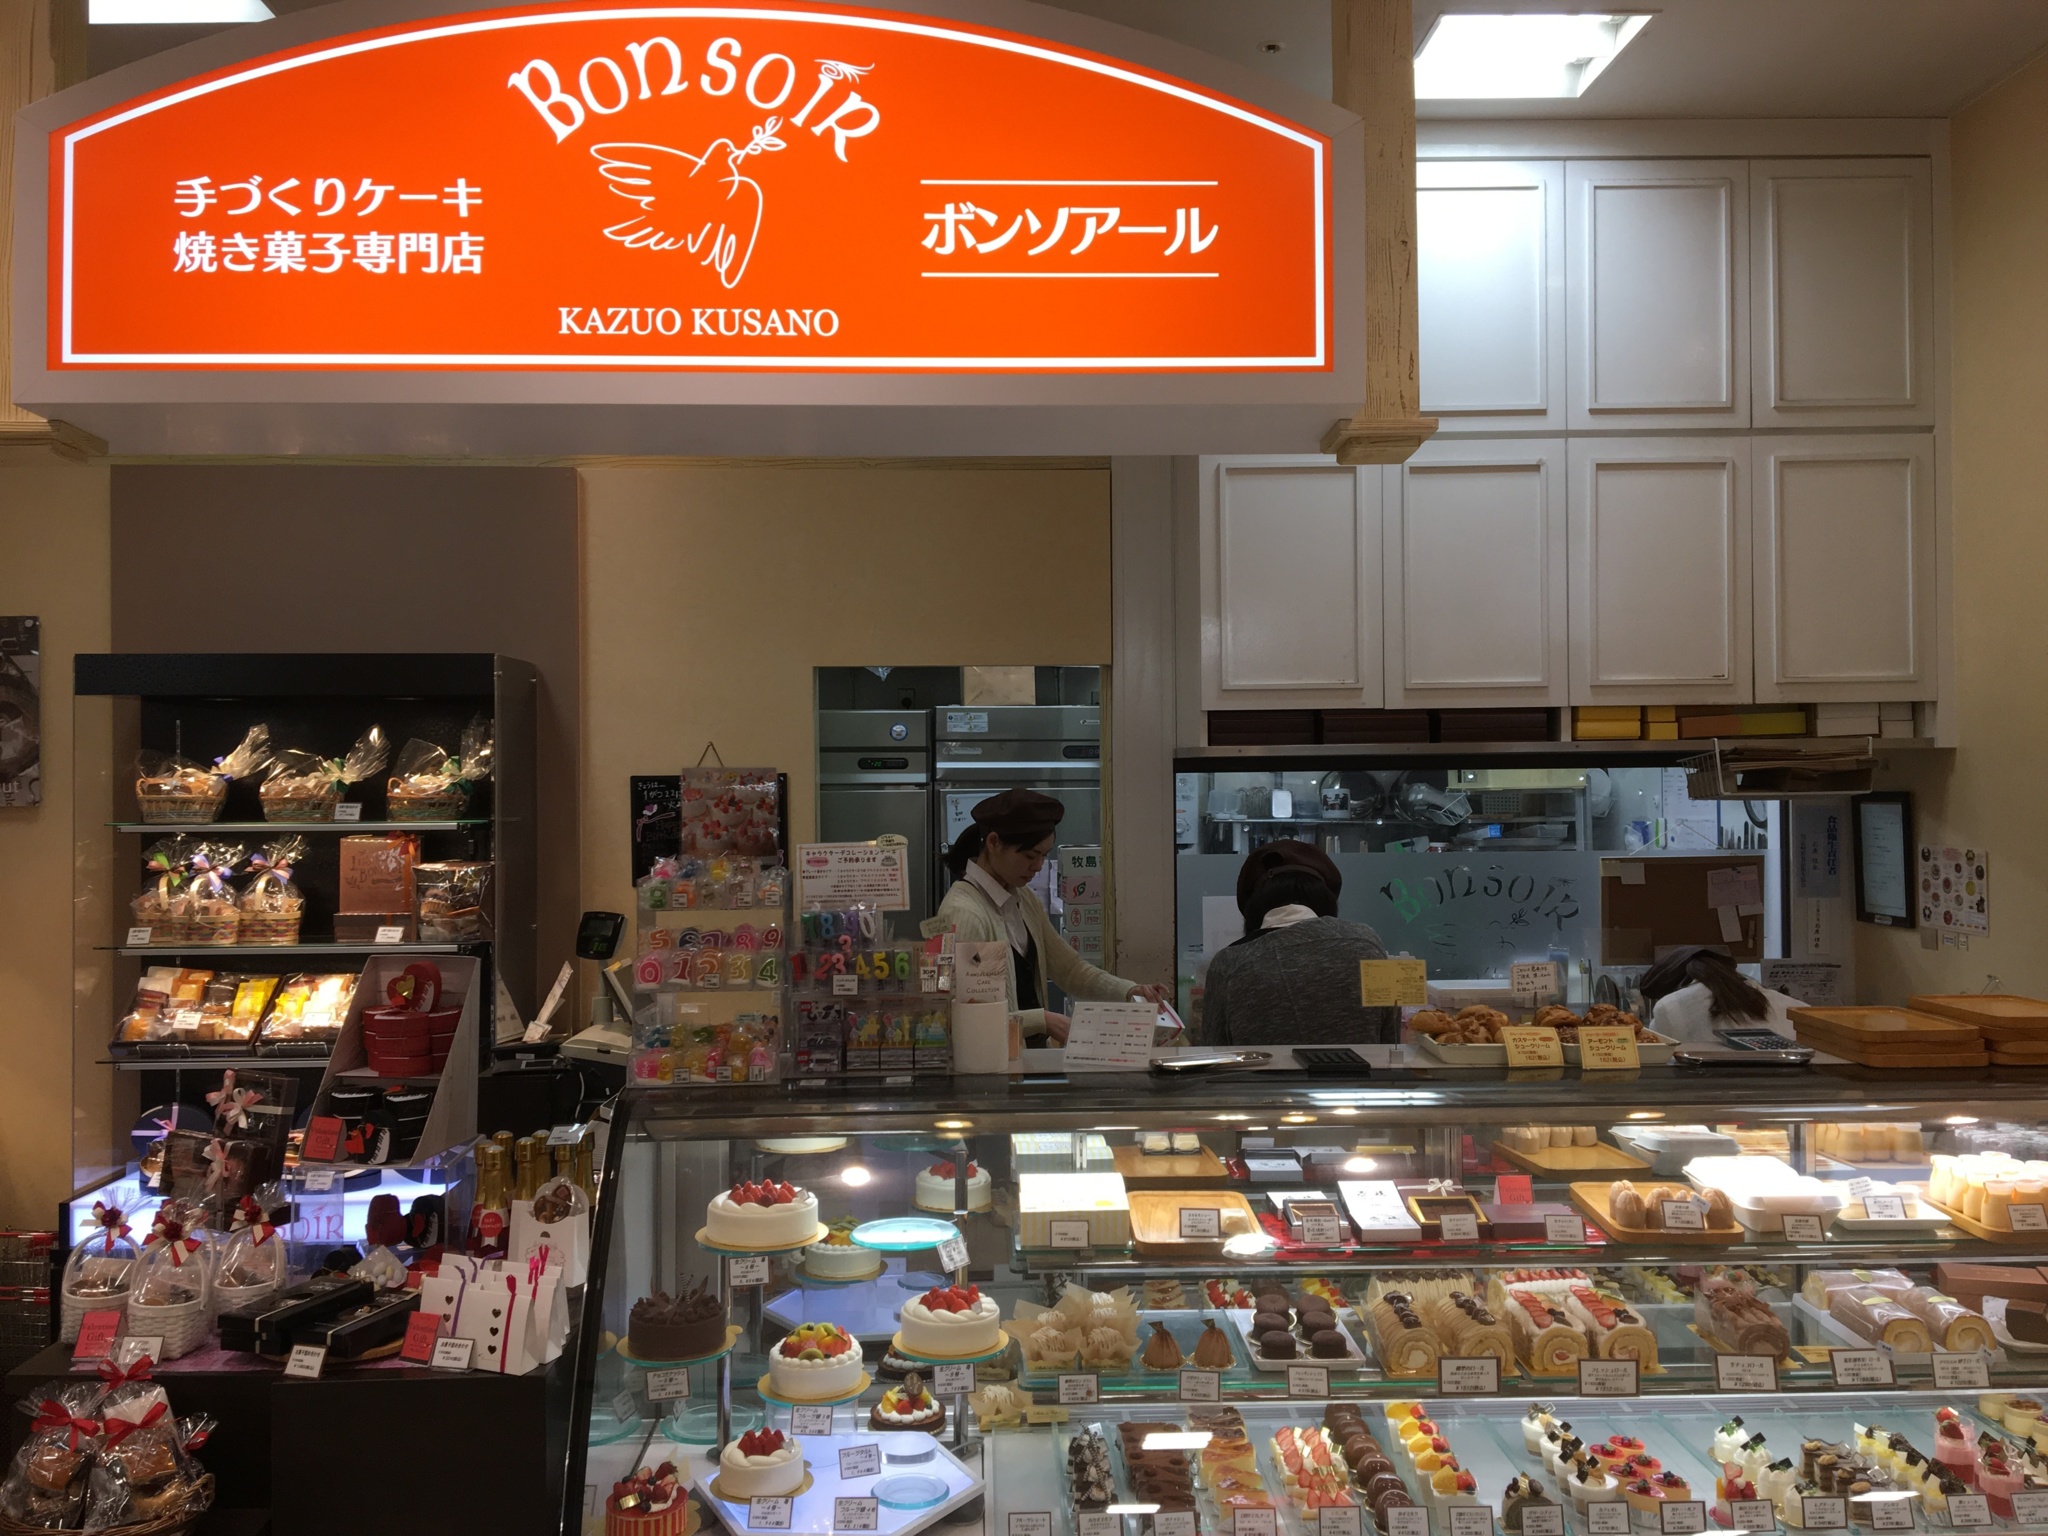 ボンソアール アミュプラザ店 長崎でデコレーションケーキや洋菓子の予約販売はボンソアールへ